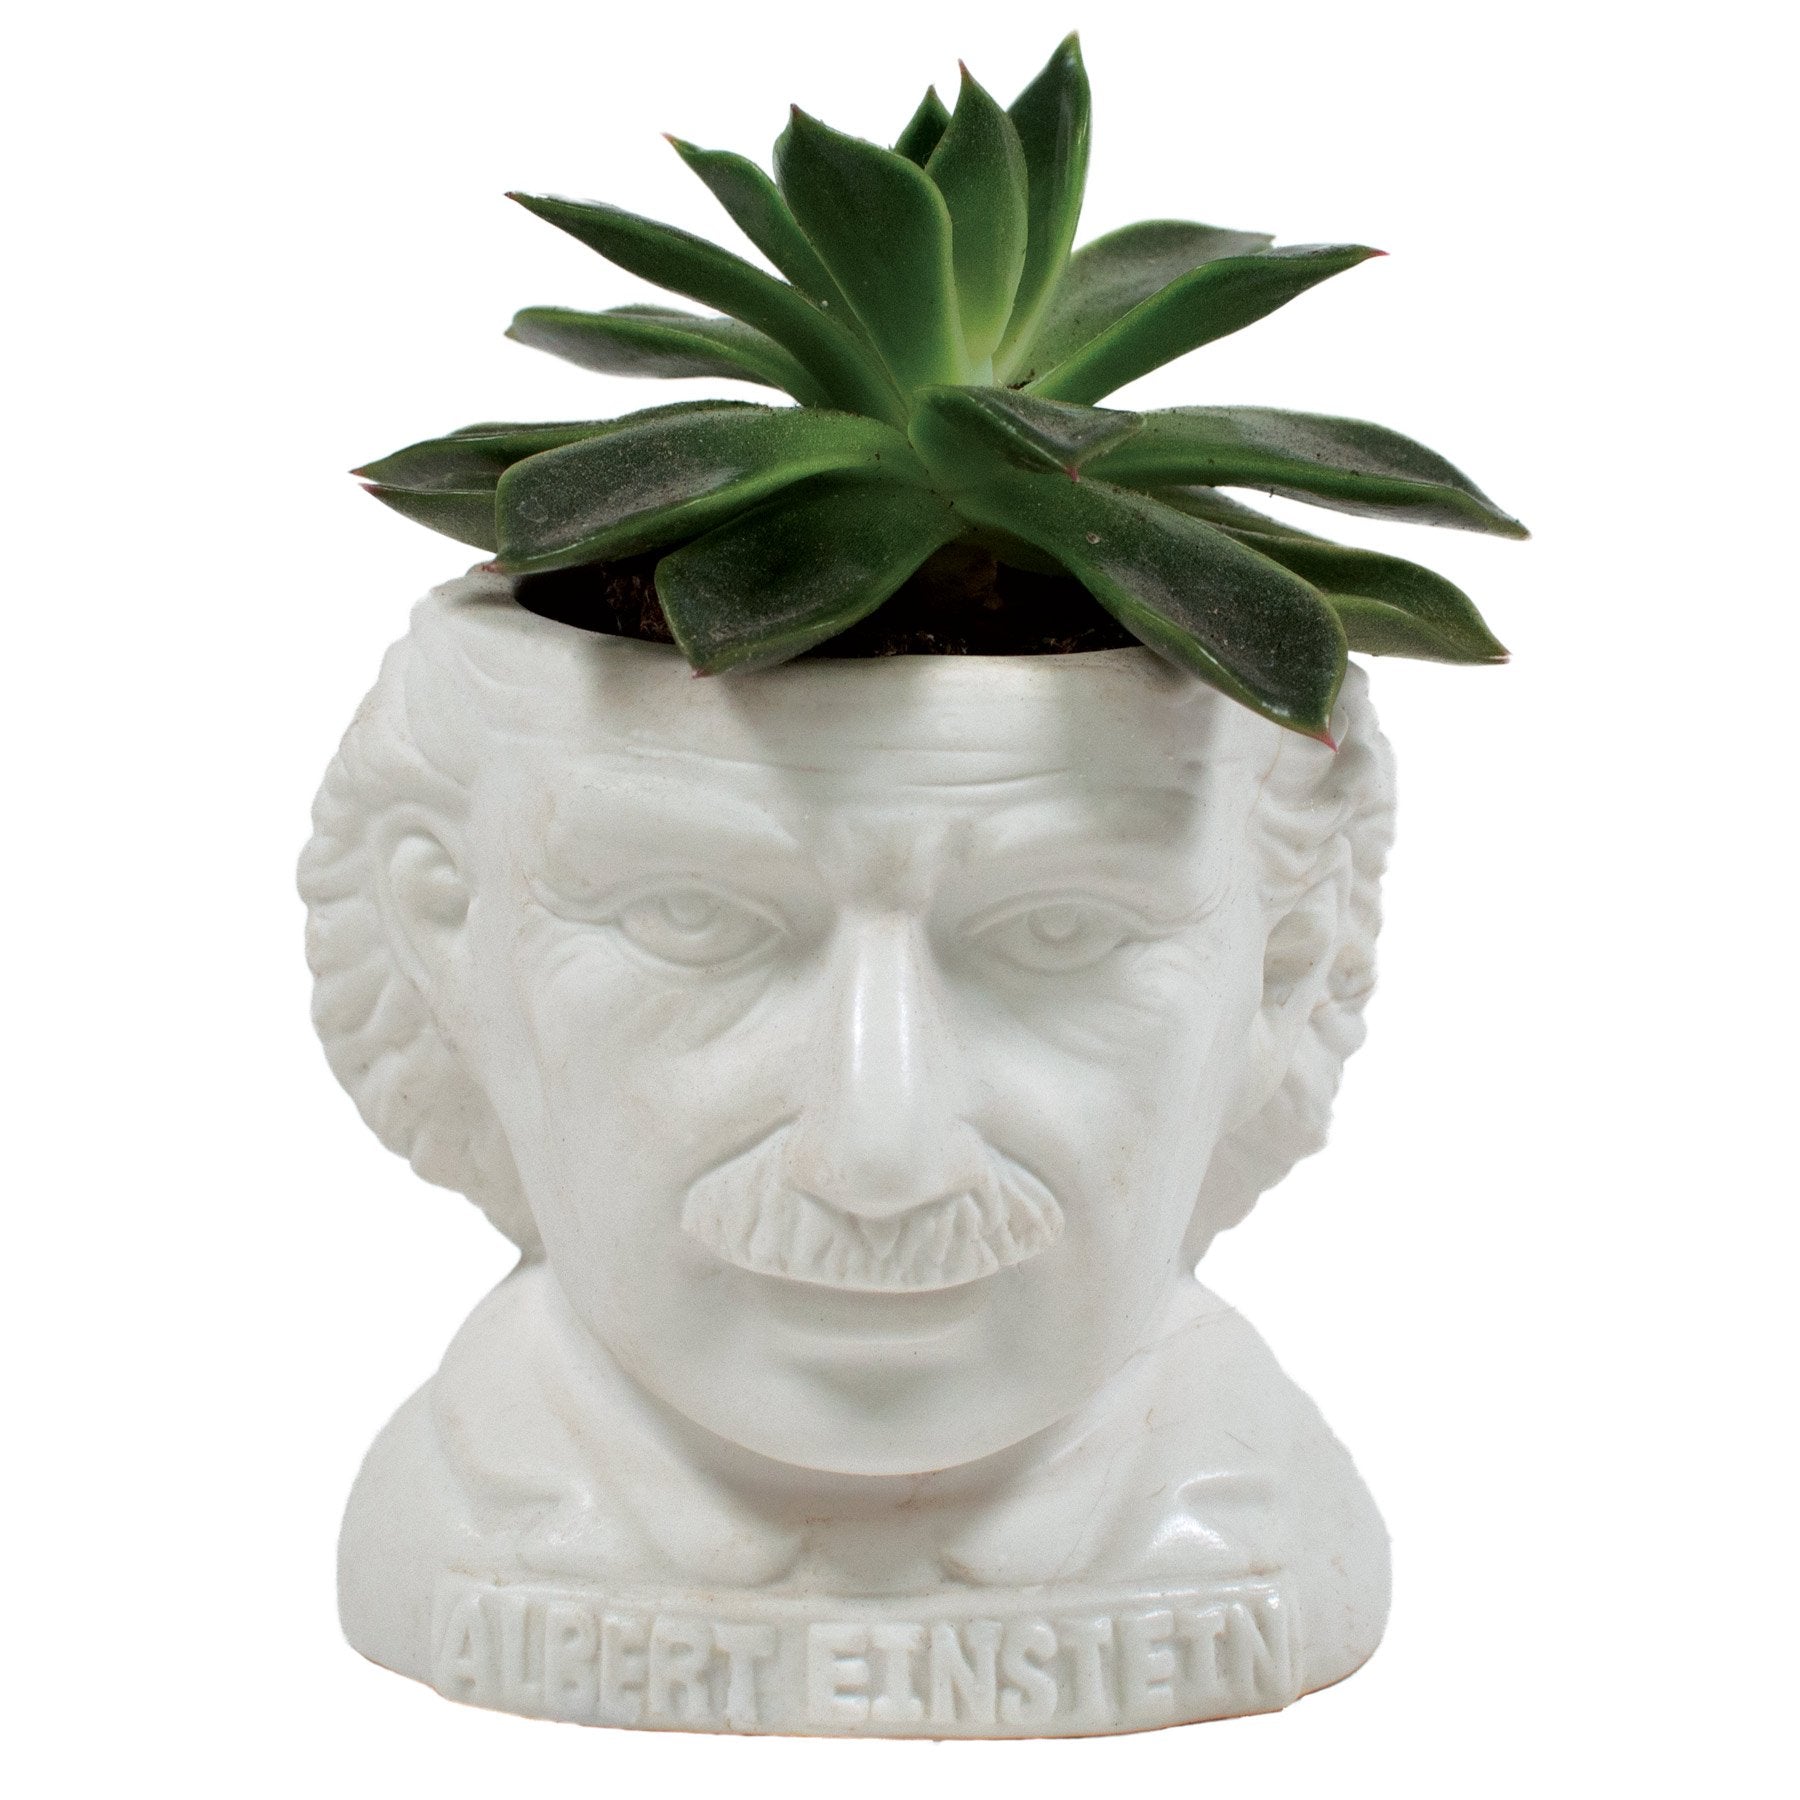 Albert Einstein Planter